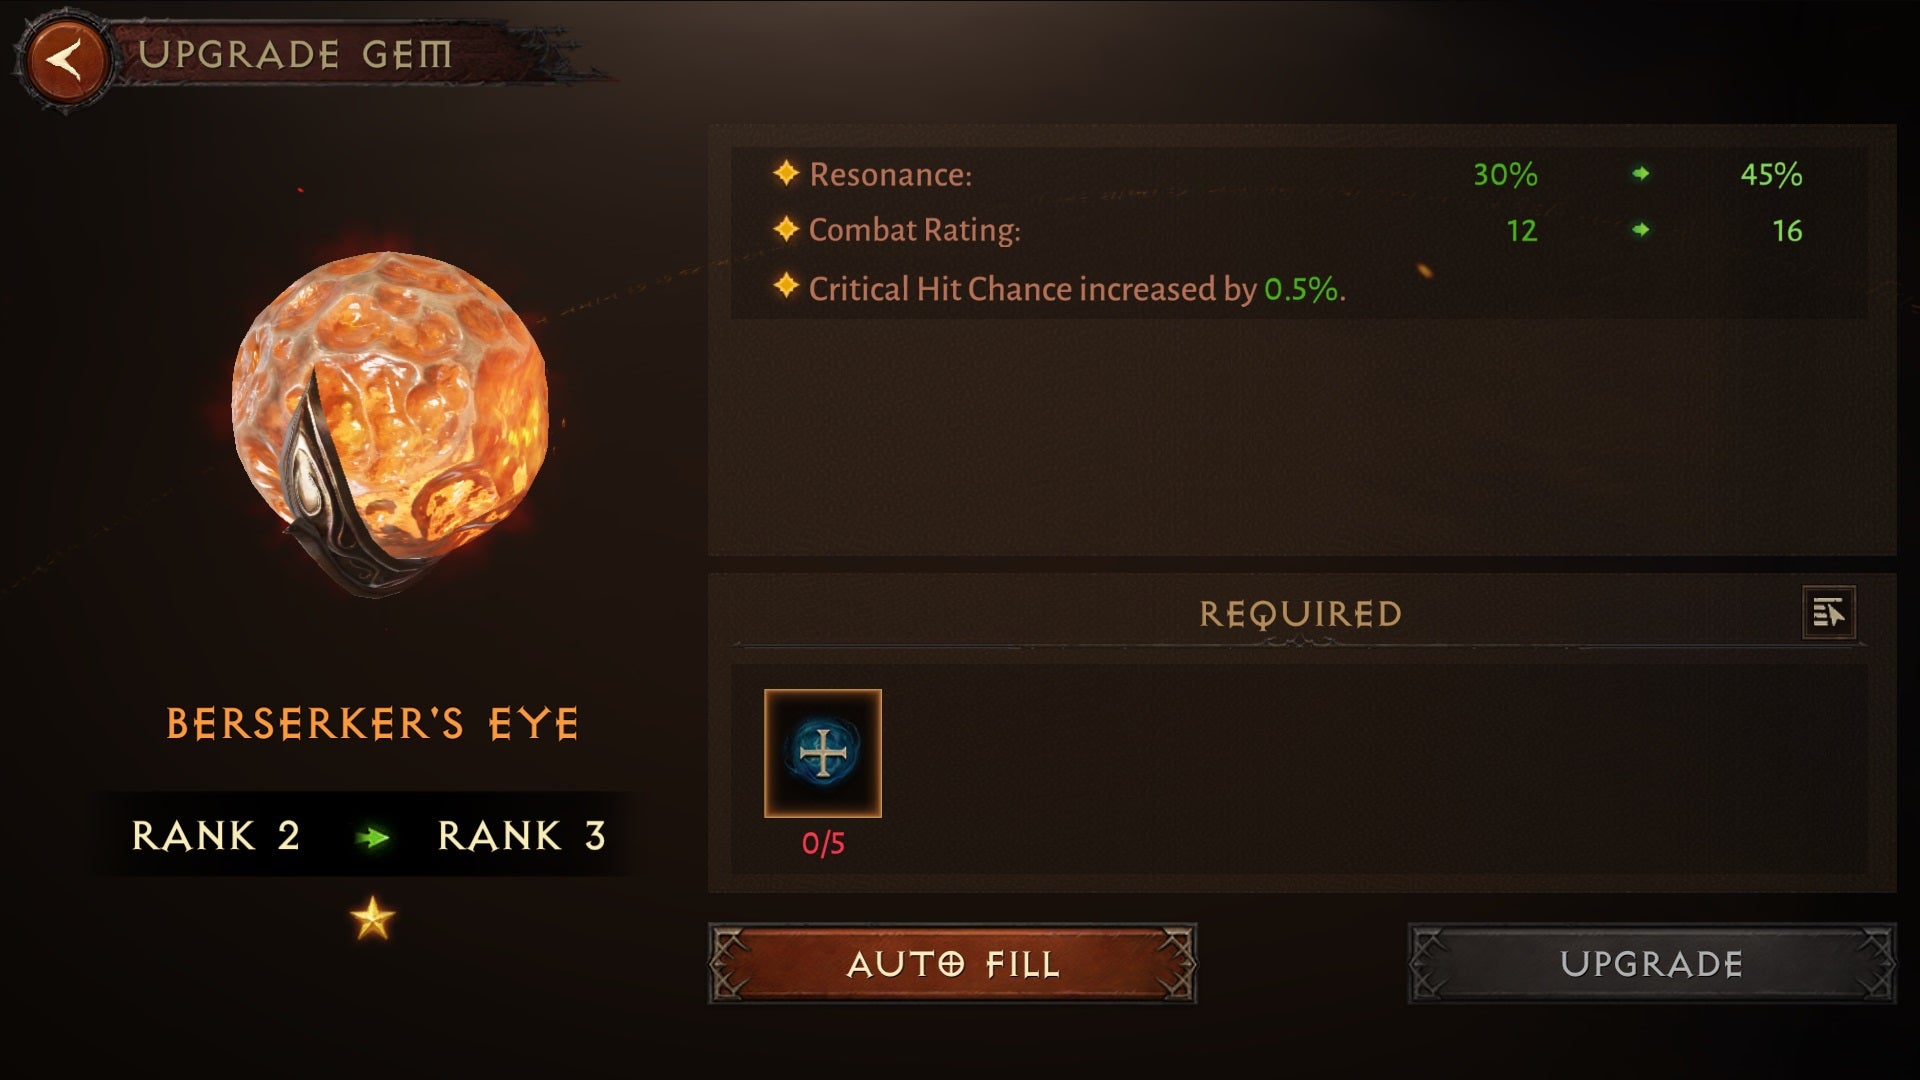 The Berserker's Eye gem in Diablo Immortal